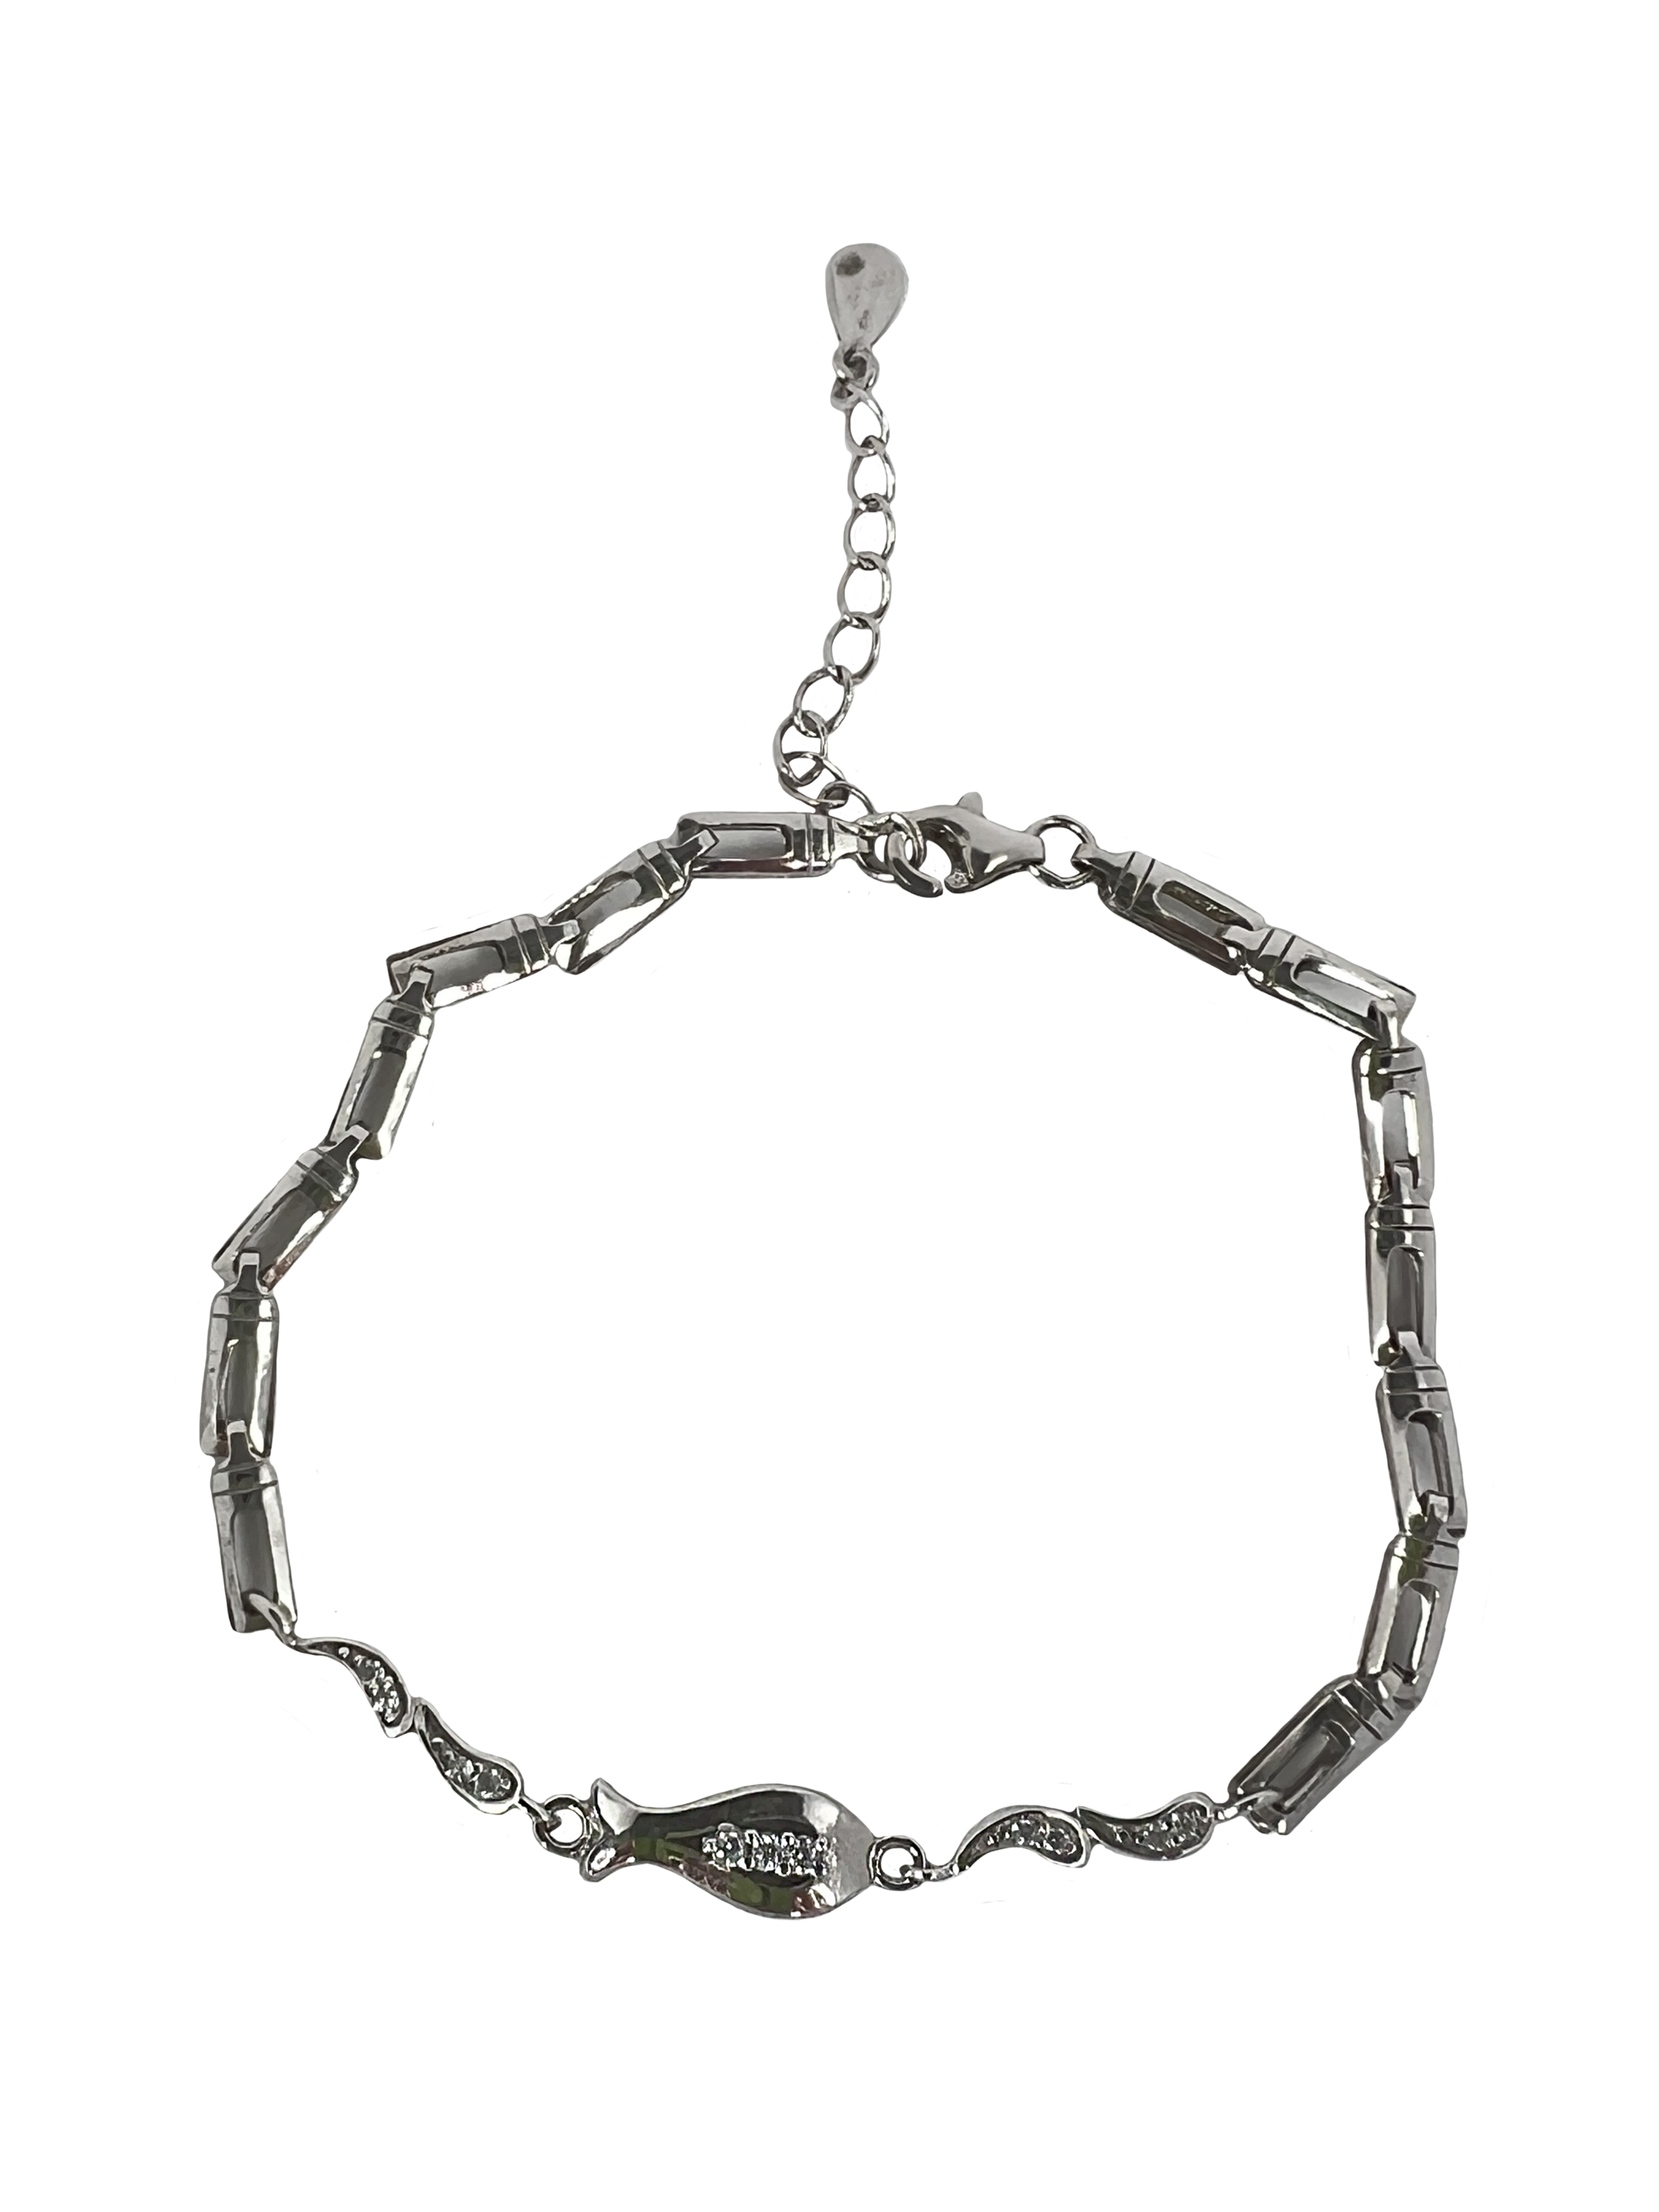 Bracciale in argento decorato con cristalli